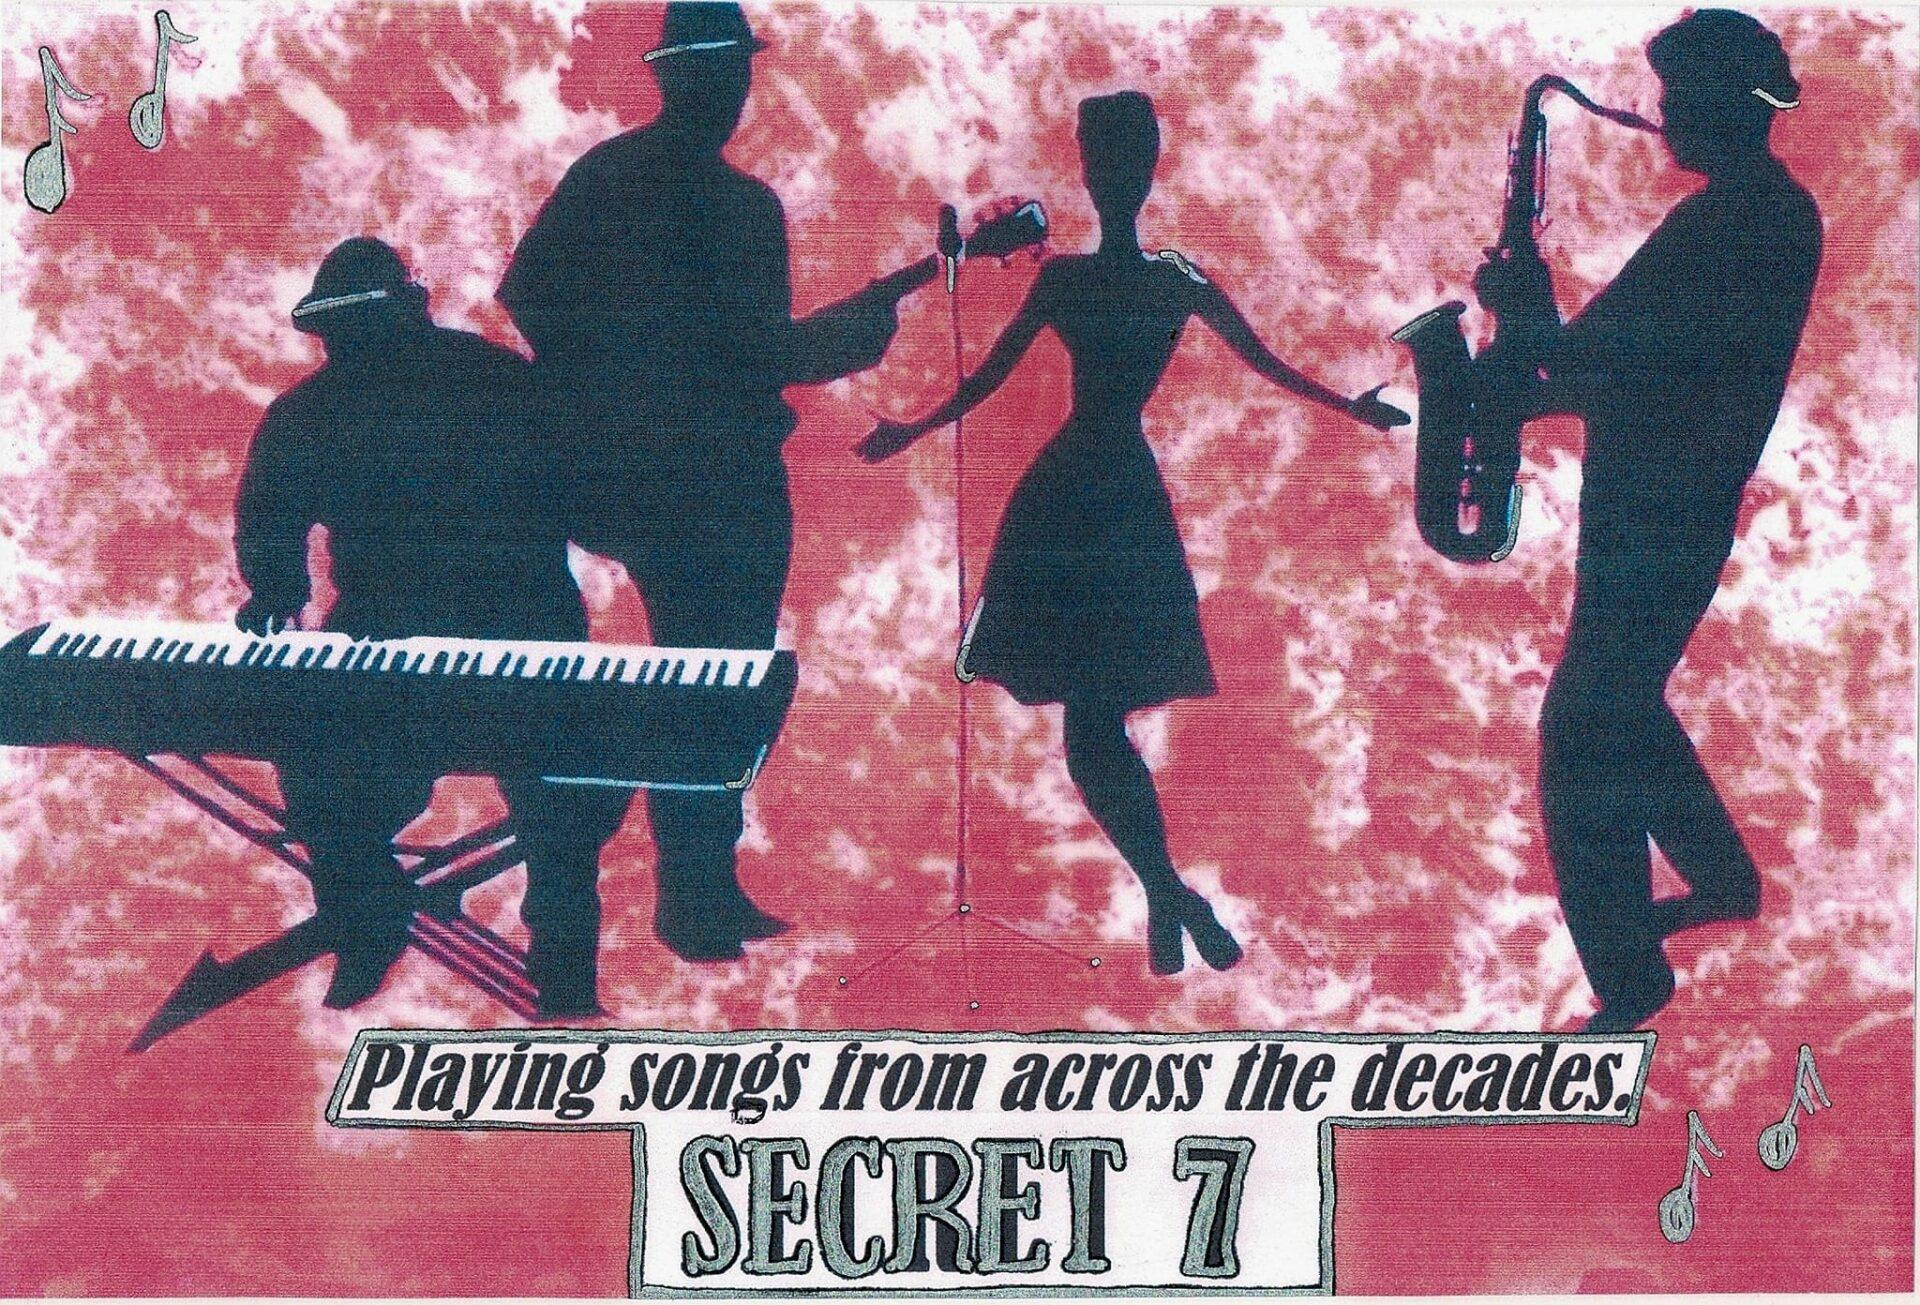 secret 7